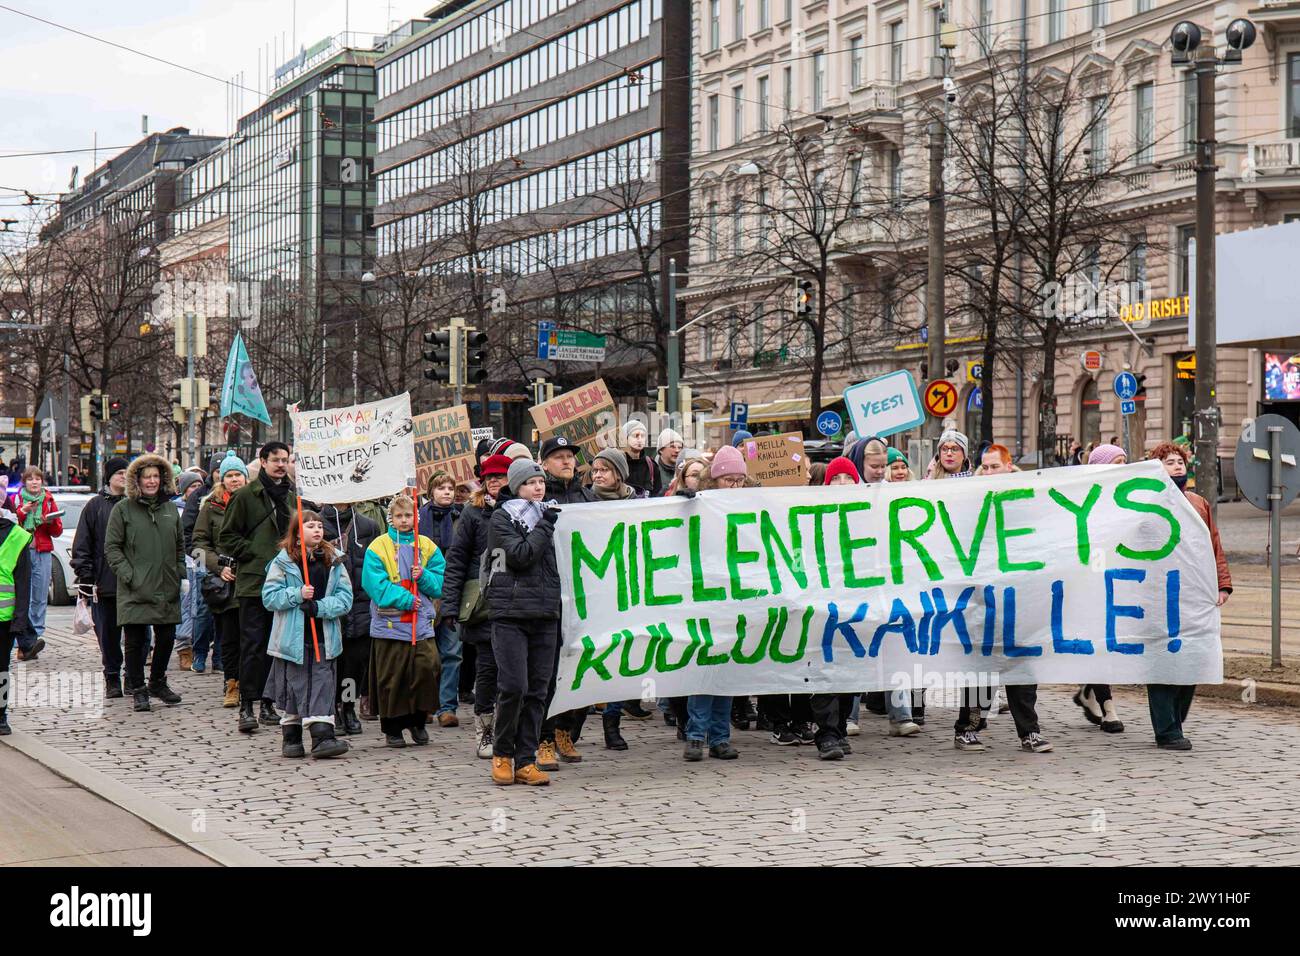 Leute mit Banner und Schildern marschieren auf Mannerheimintie im Mielenterveys Kuuluu Kaikille! Demonstration in Helsinki, Finnland Stockfoto